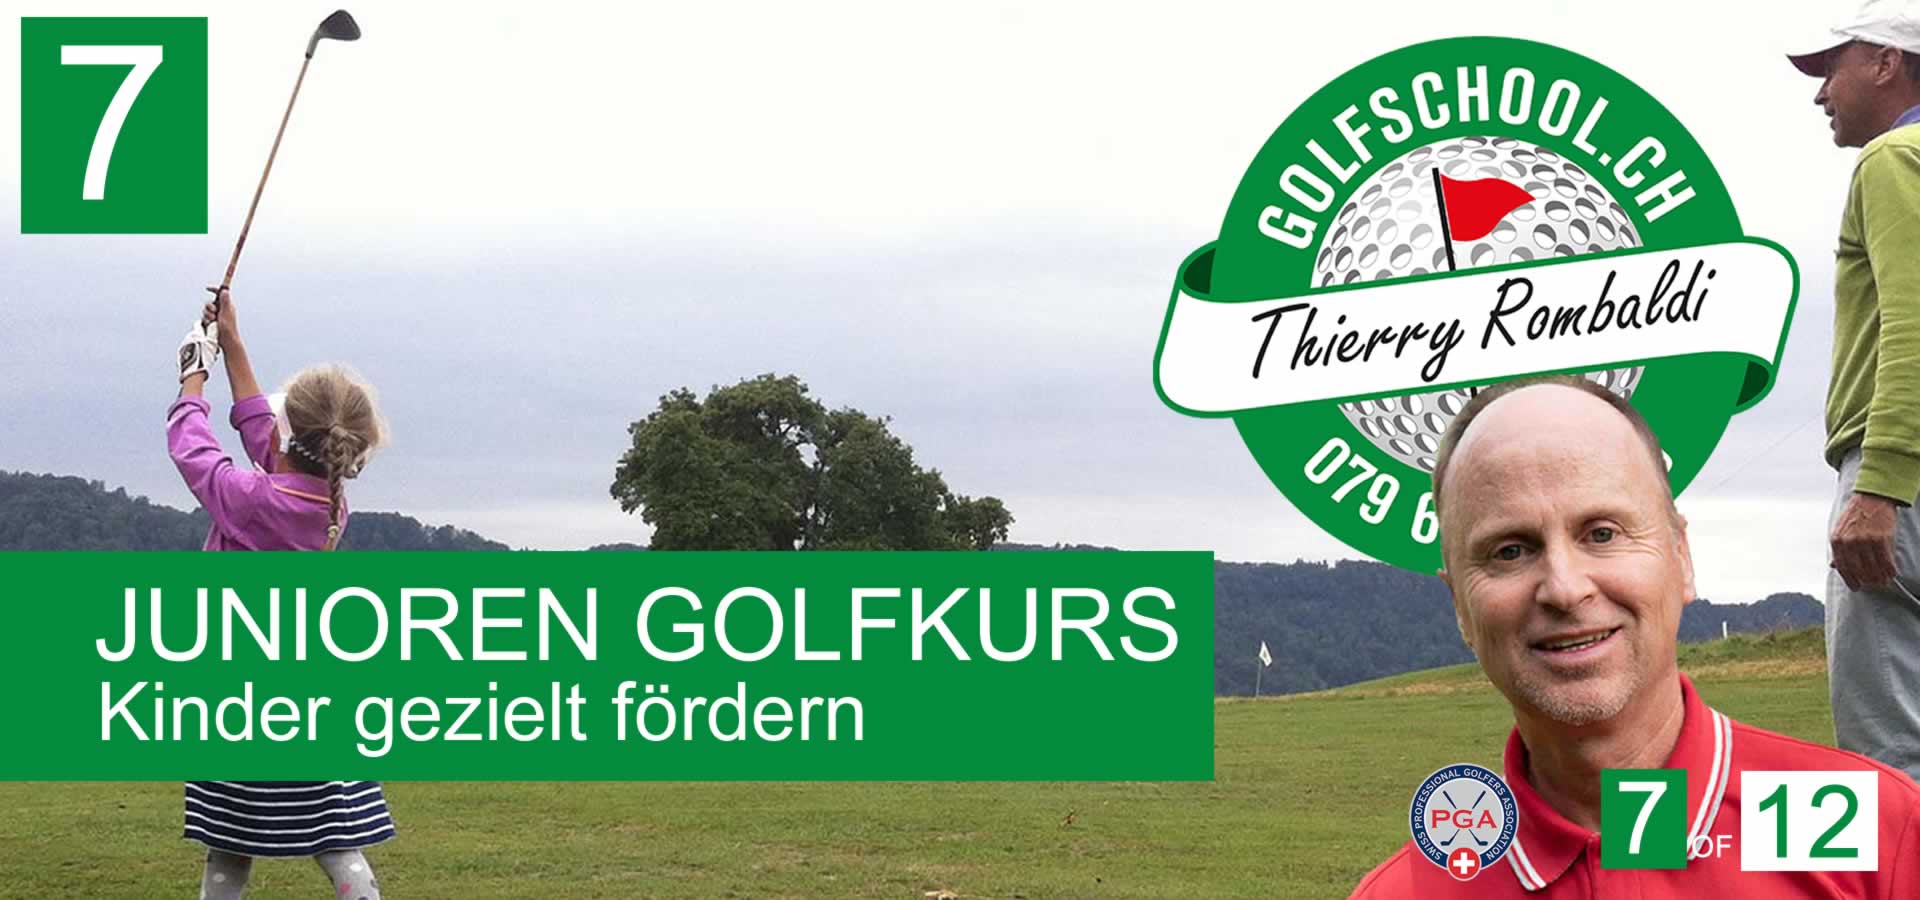 07-Golf-Kinder-Junioren-Golflehrer-Golfpro-Zuerich-Golfschule-jugendliche-Golfschool-Thierry-Rombaldi